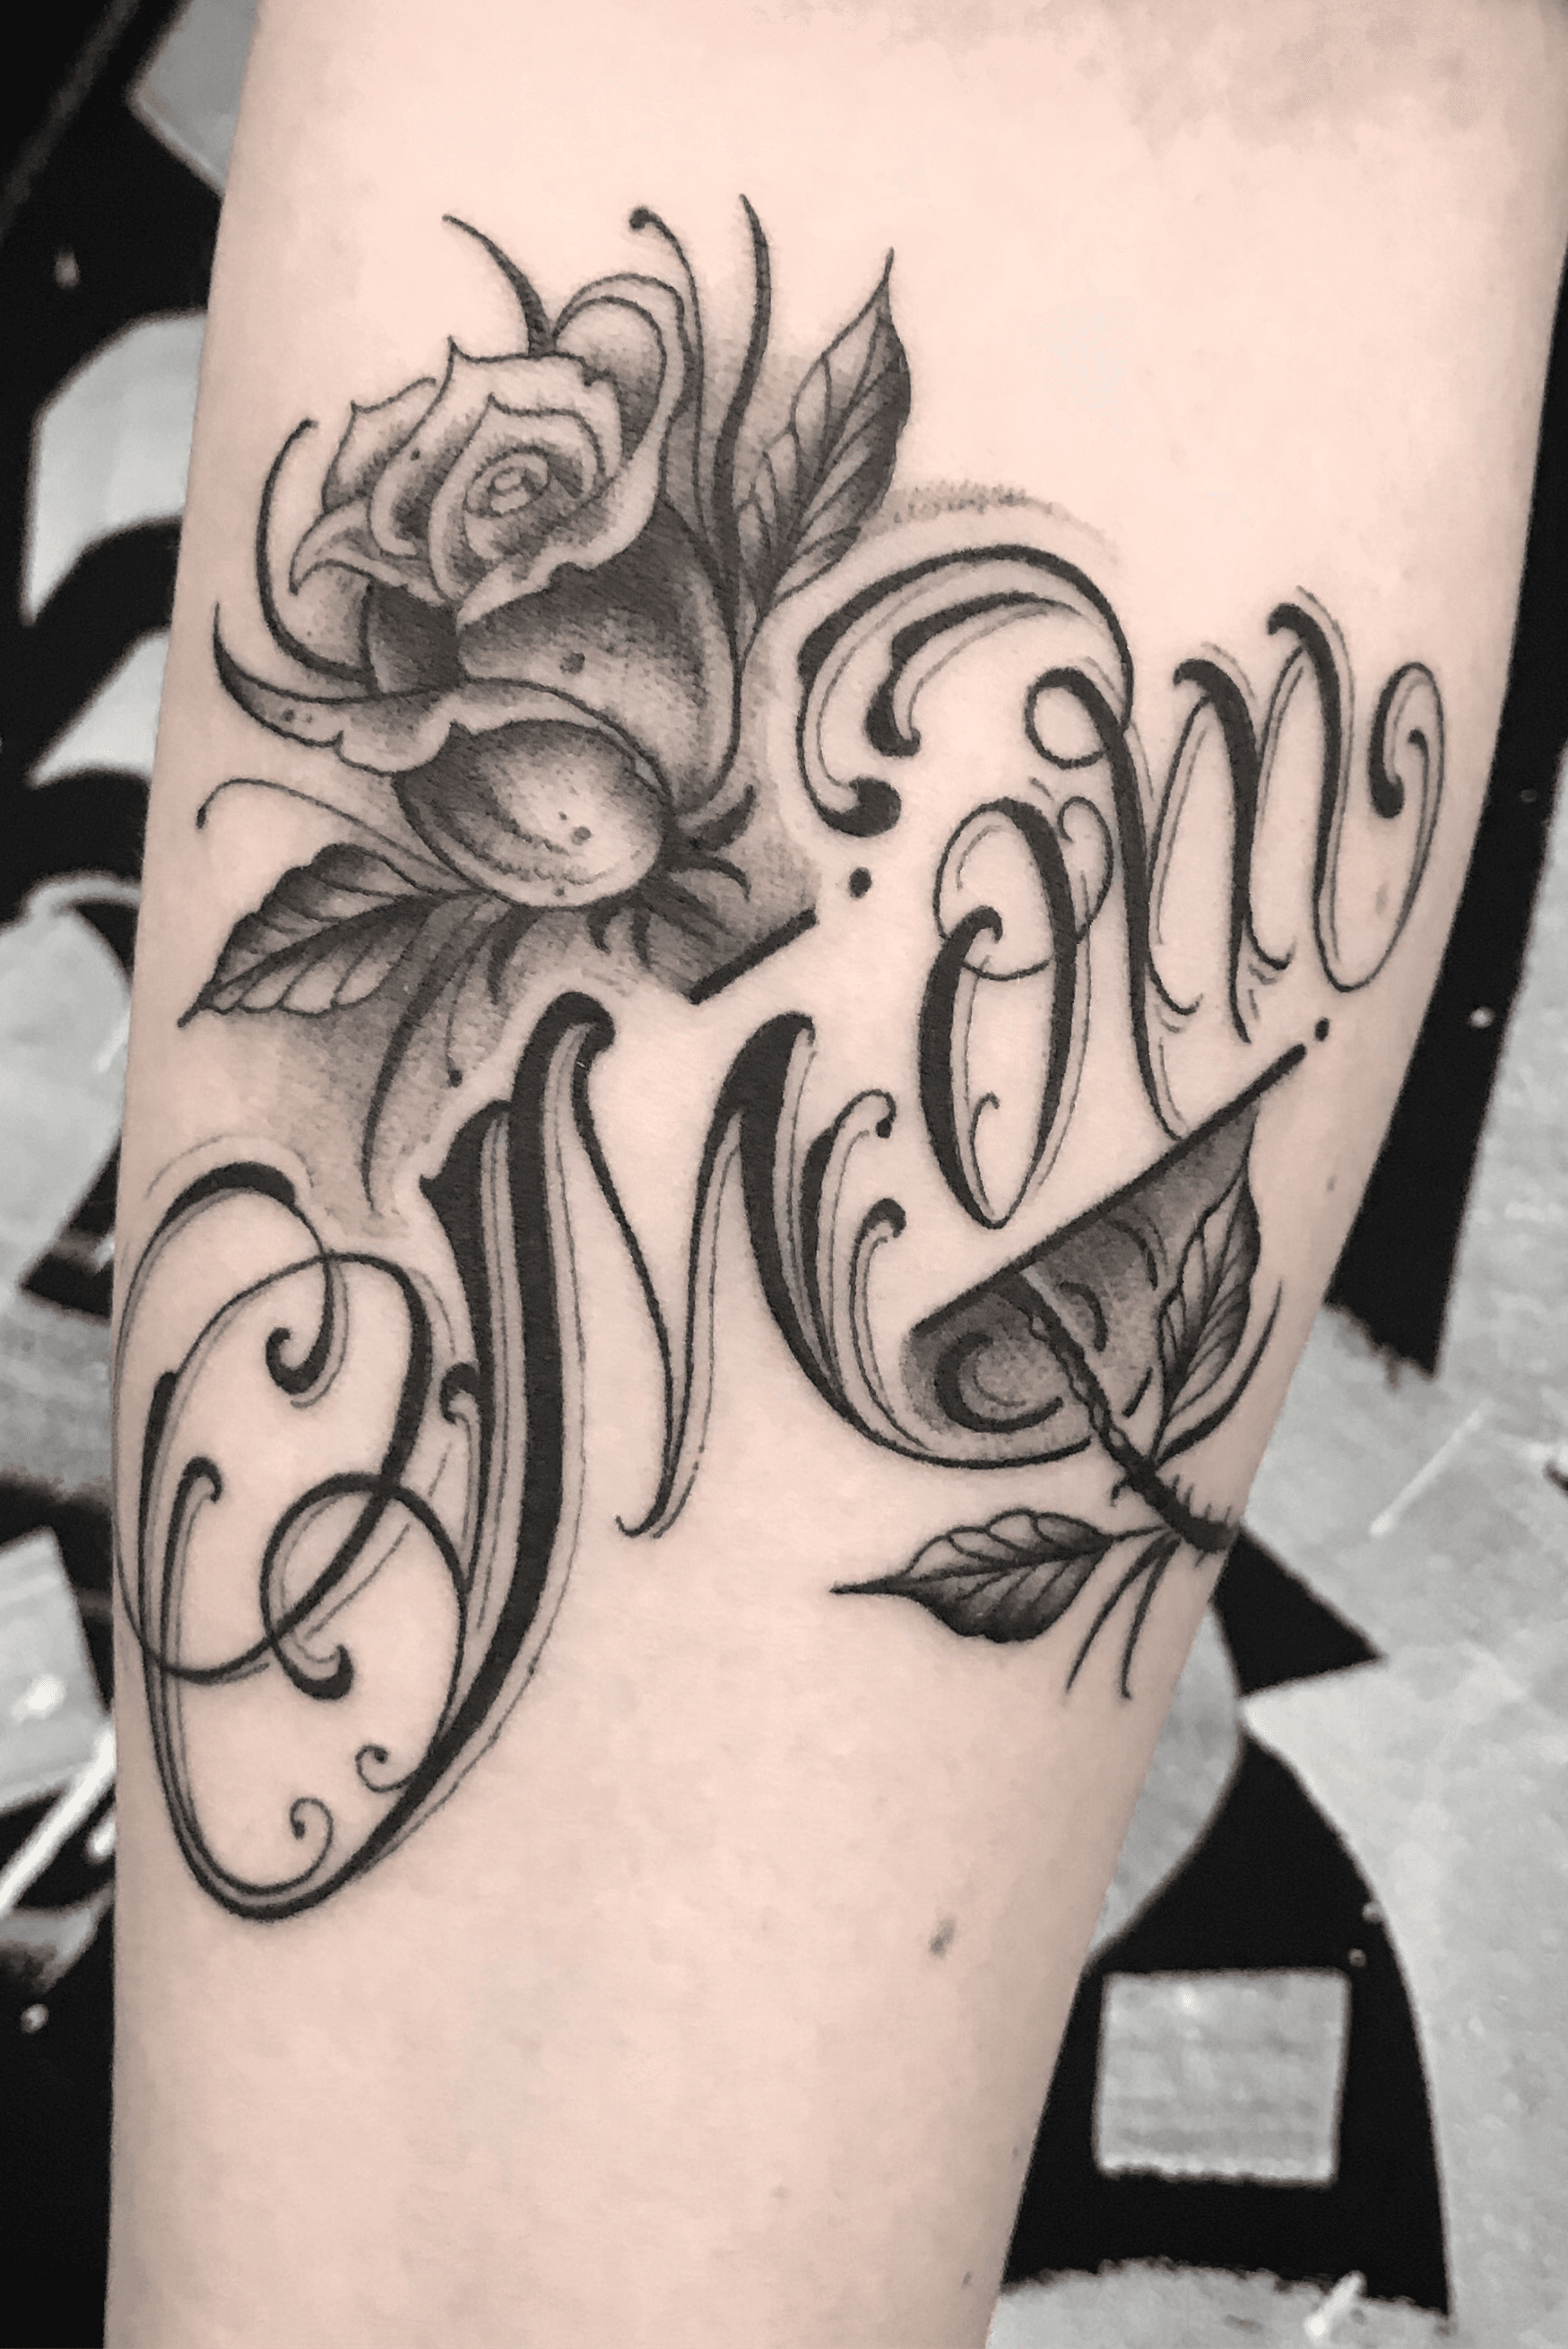 Mom tattoo  lettering tattoo  Tattoo lettering Mom tattoos Tattoos